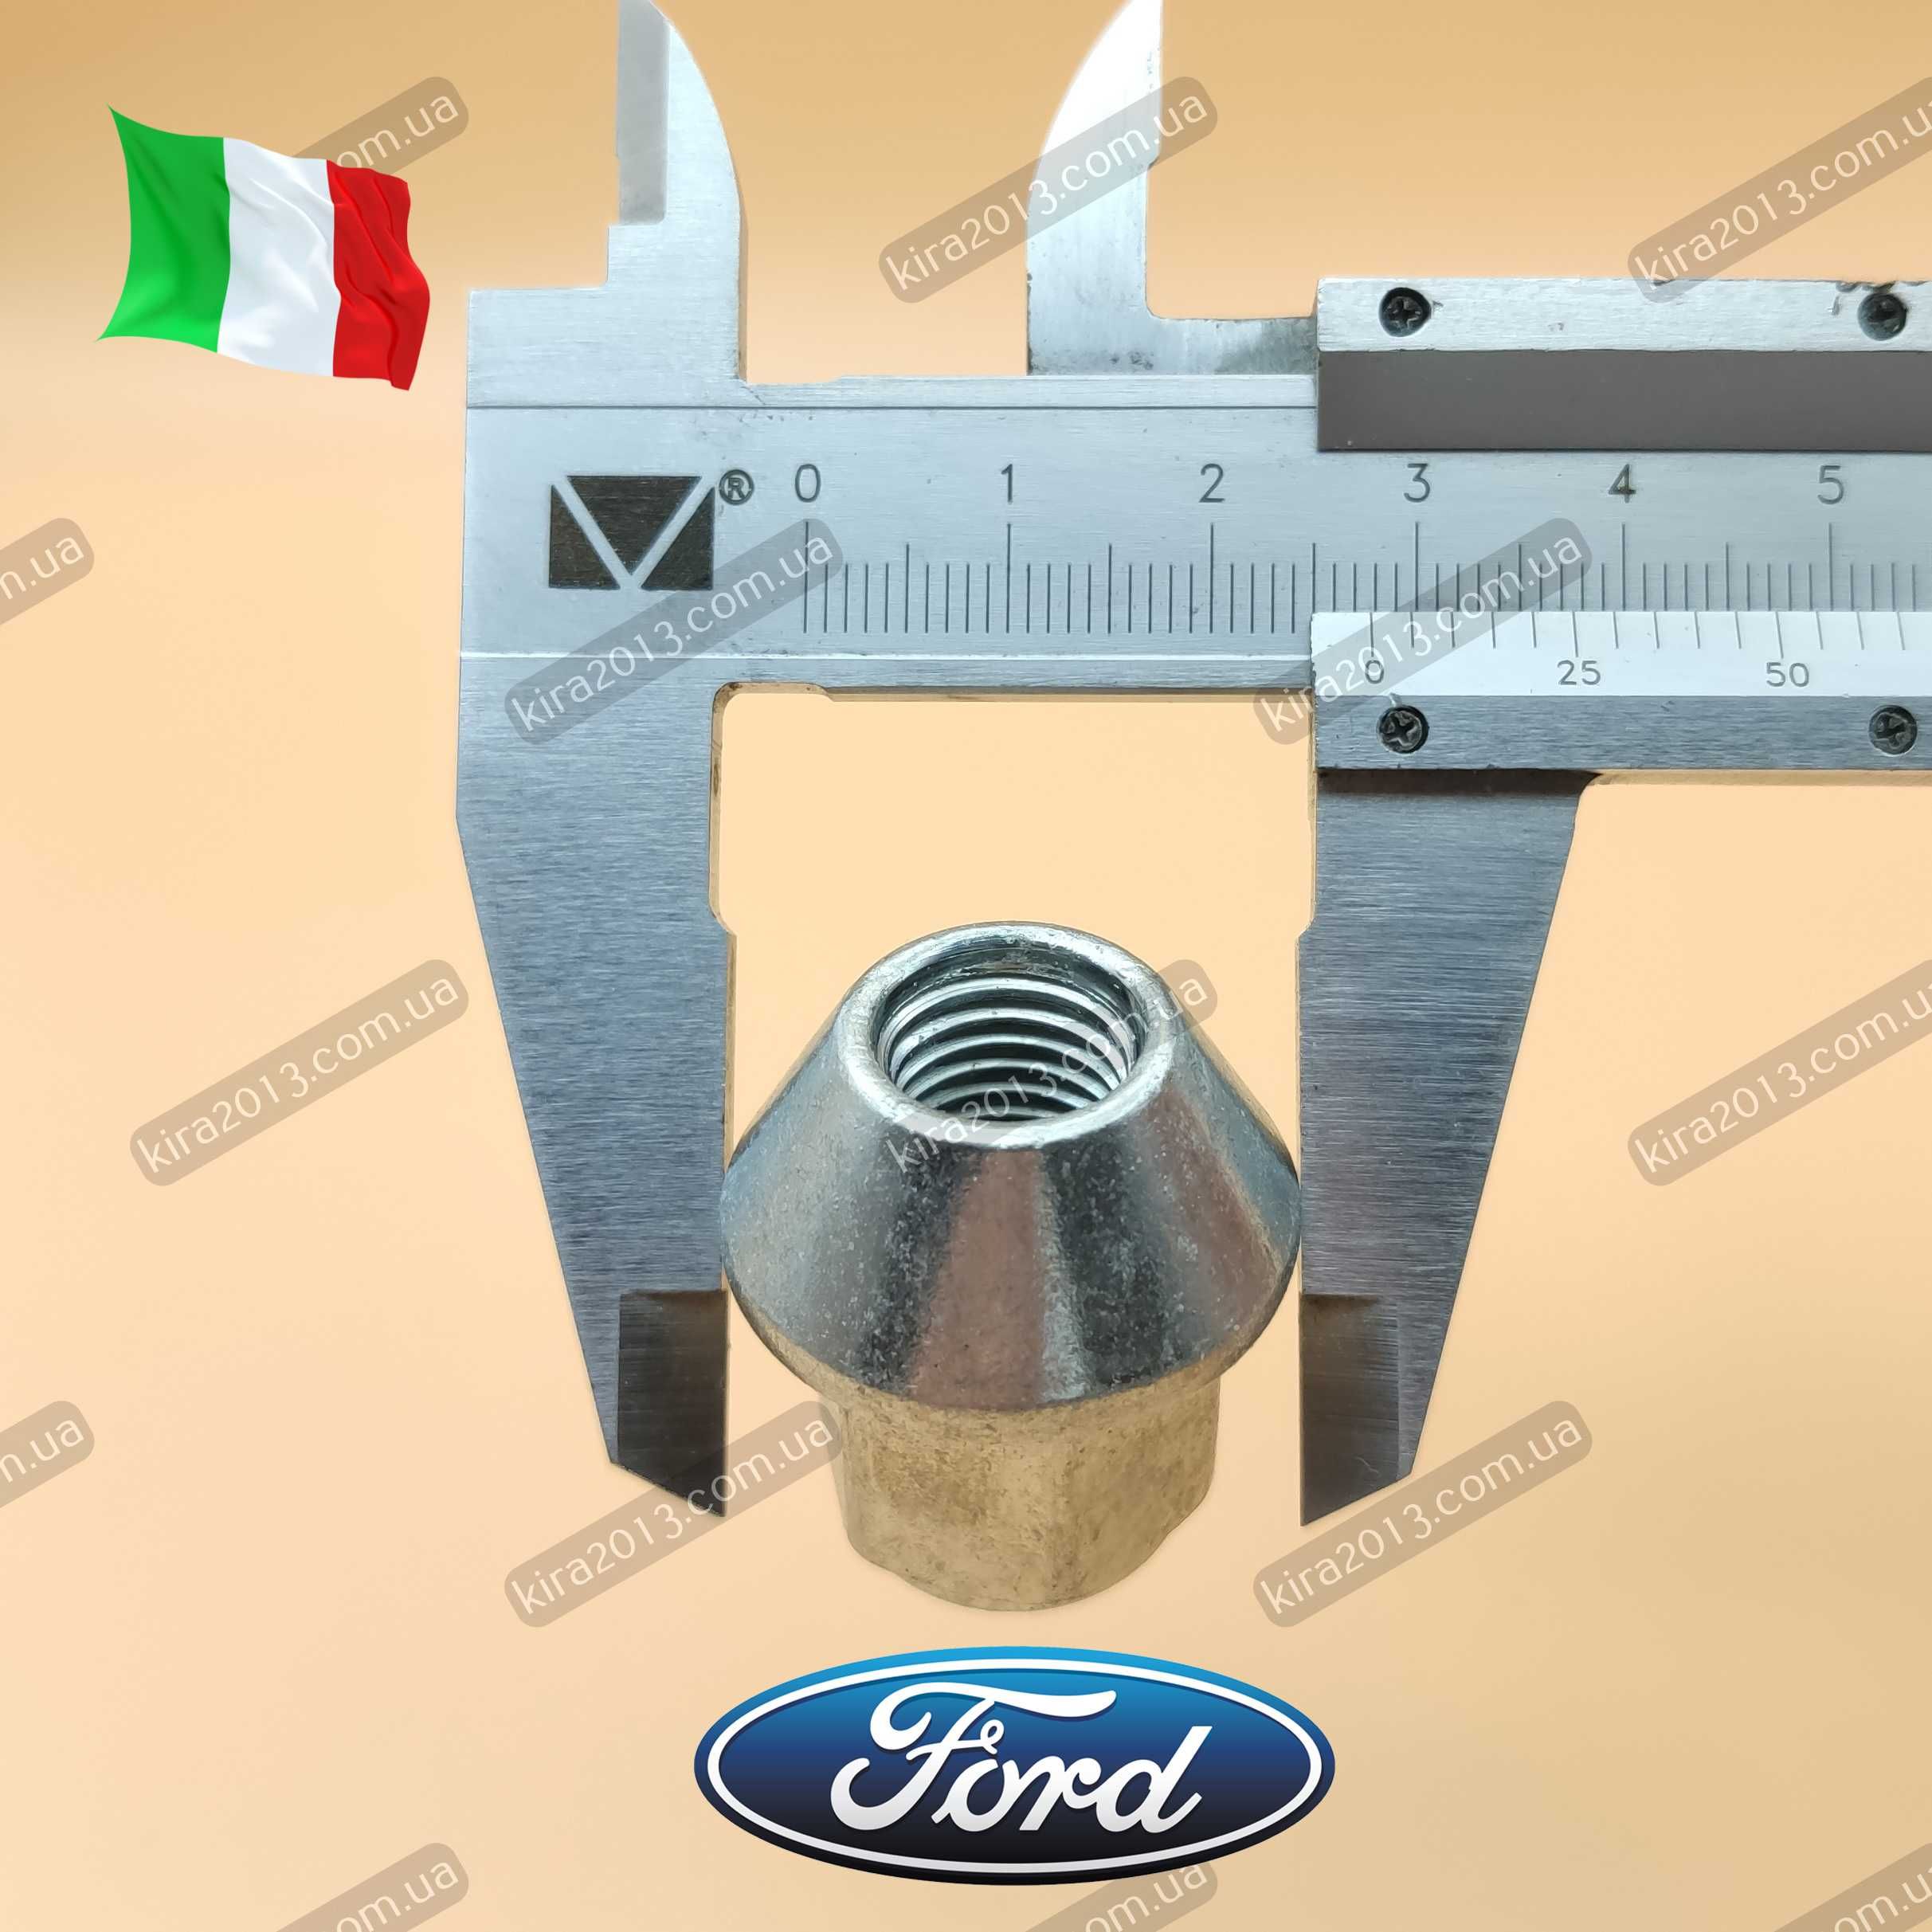 Гайка Форд для оригинальных дисков Форд Ford Ford Fusion Mondeo Fiesta